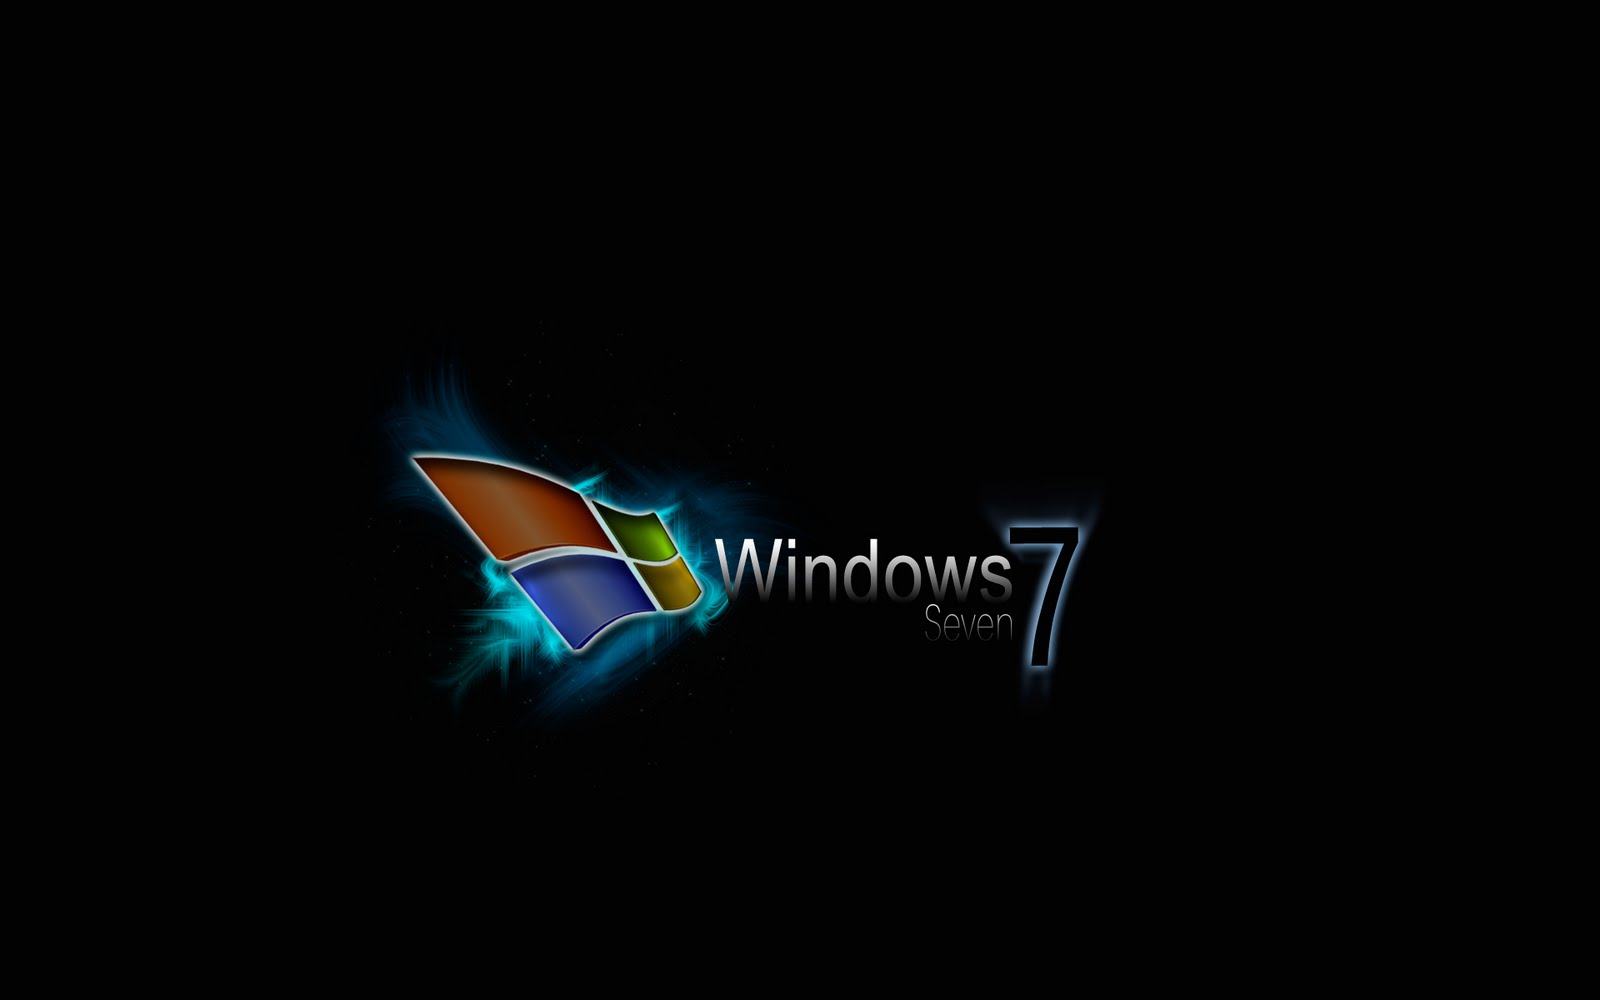 Bạn đang tìm kiếm những hình nền Windows 7 từ Zedge miễn phí? Tải ngay bộ sưu tập này để trải nghiệm những bức hình đẹp, sáng tạo và bắt mắt. Hãy để những hình ảnh này tạo nên một không gian mới mẻ và thu hút trên máy tính của bạn.